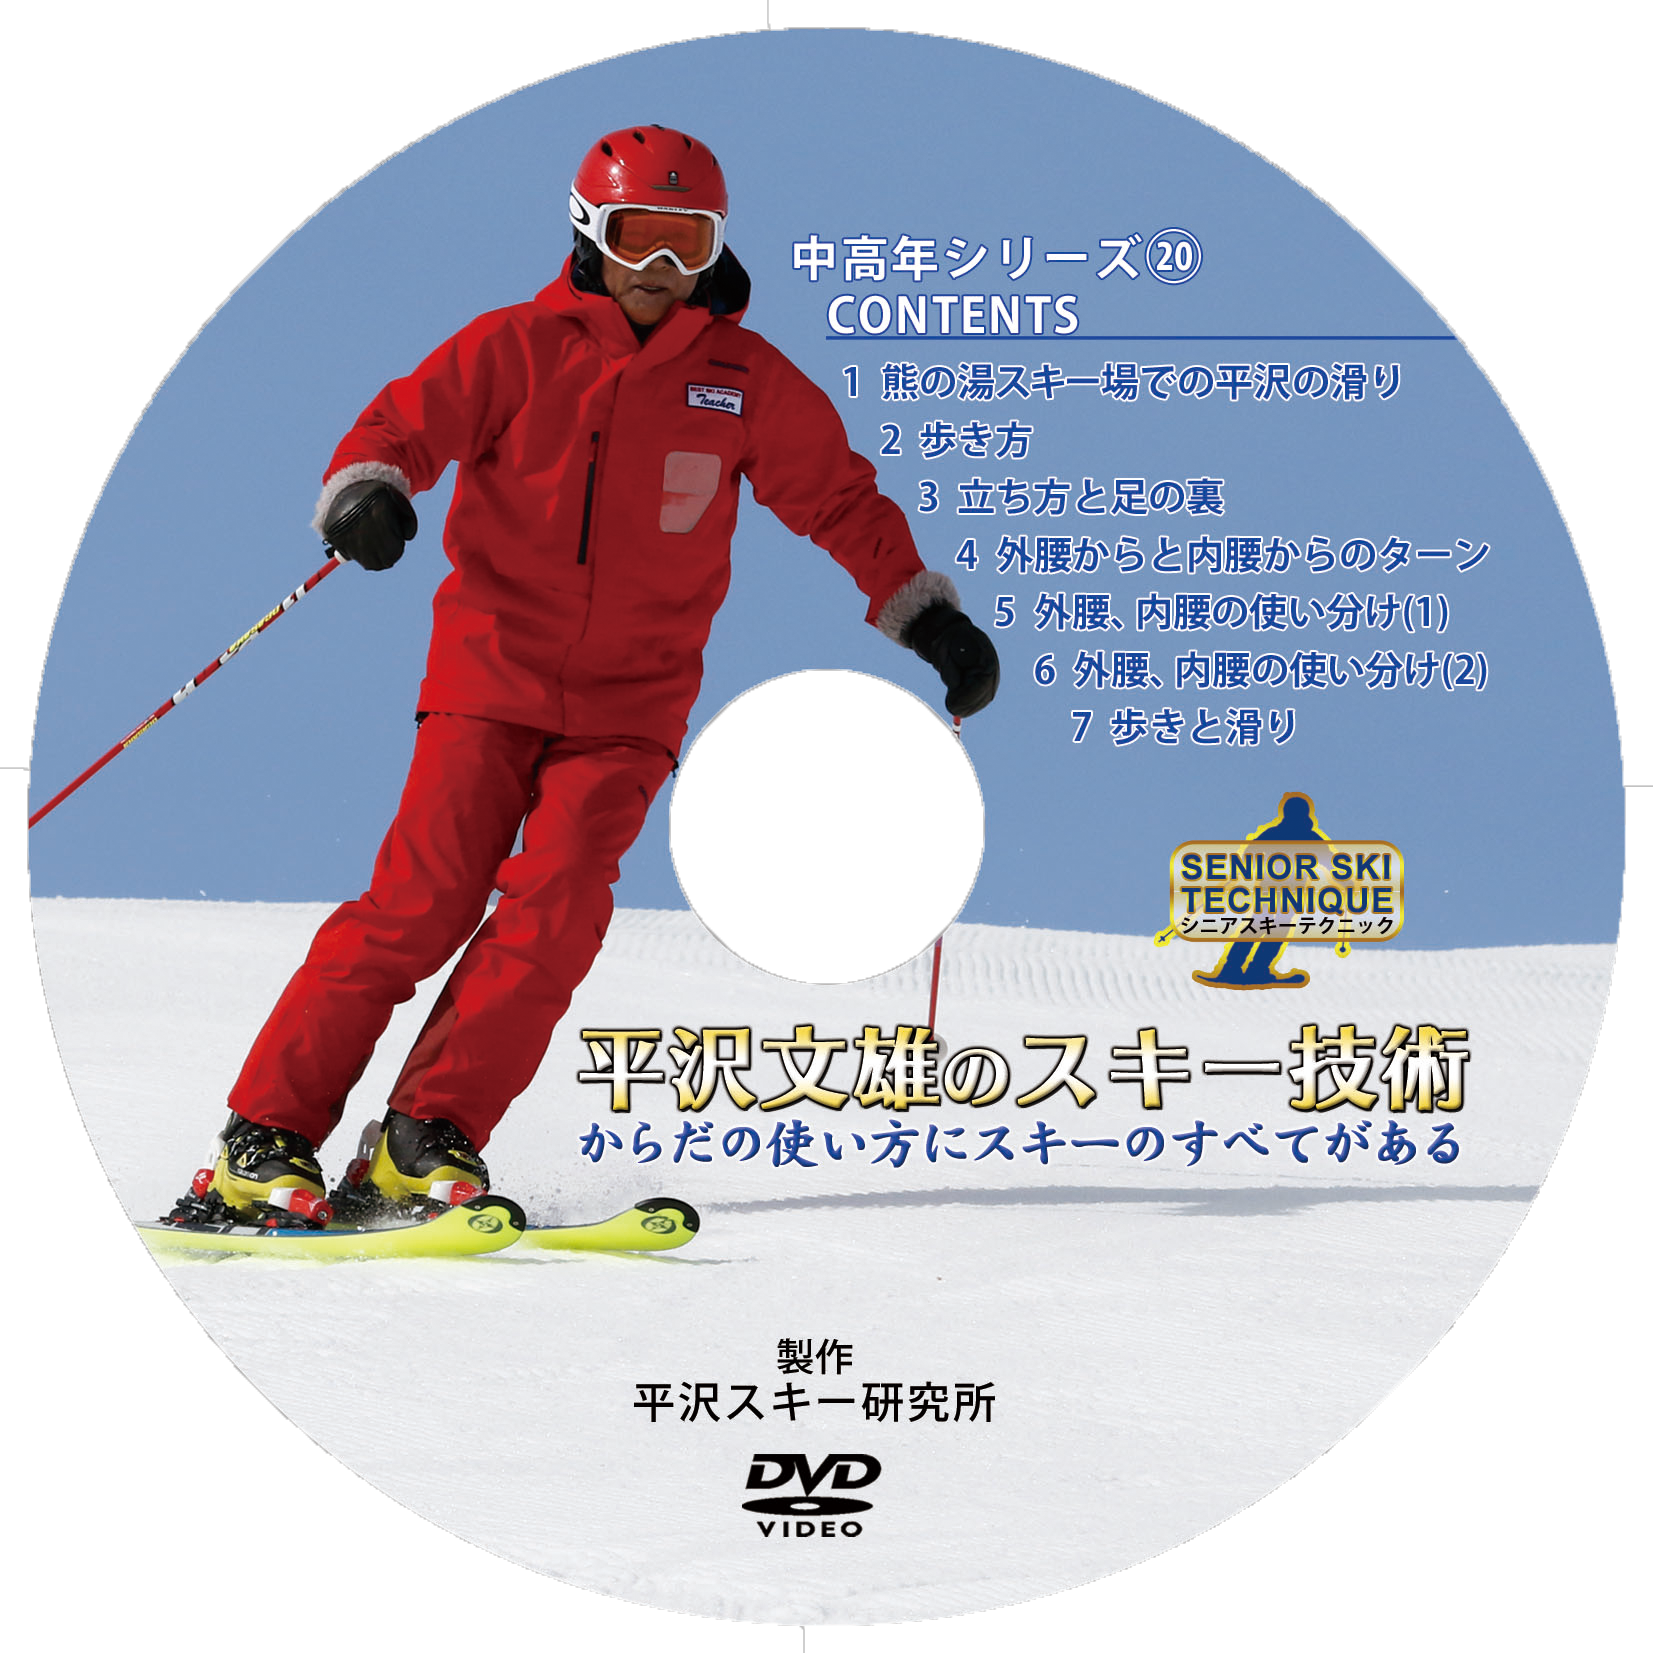 平沢文雄のスキー技術